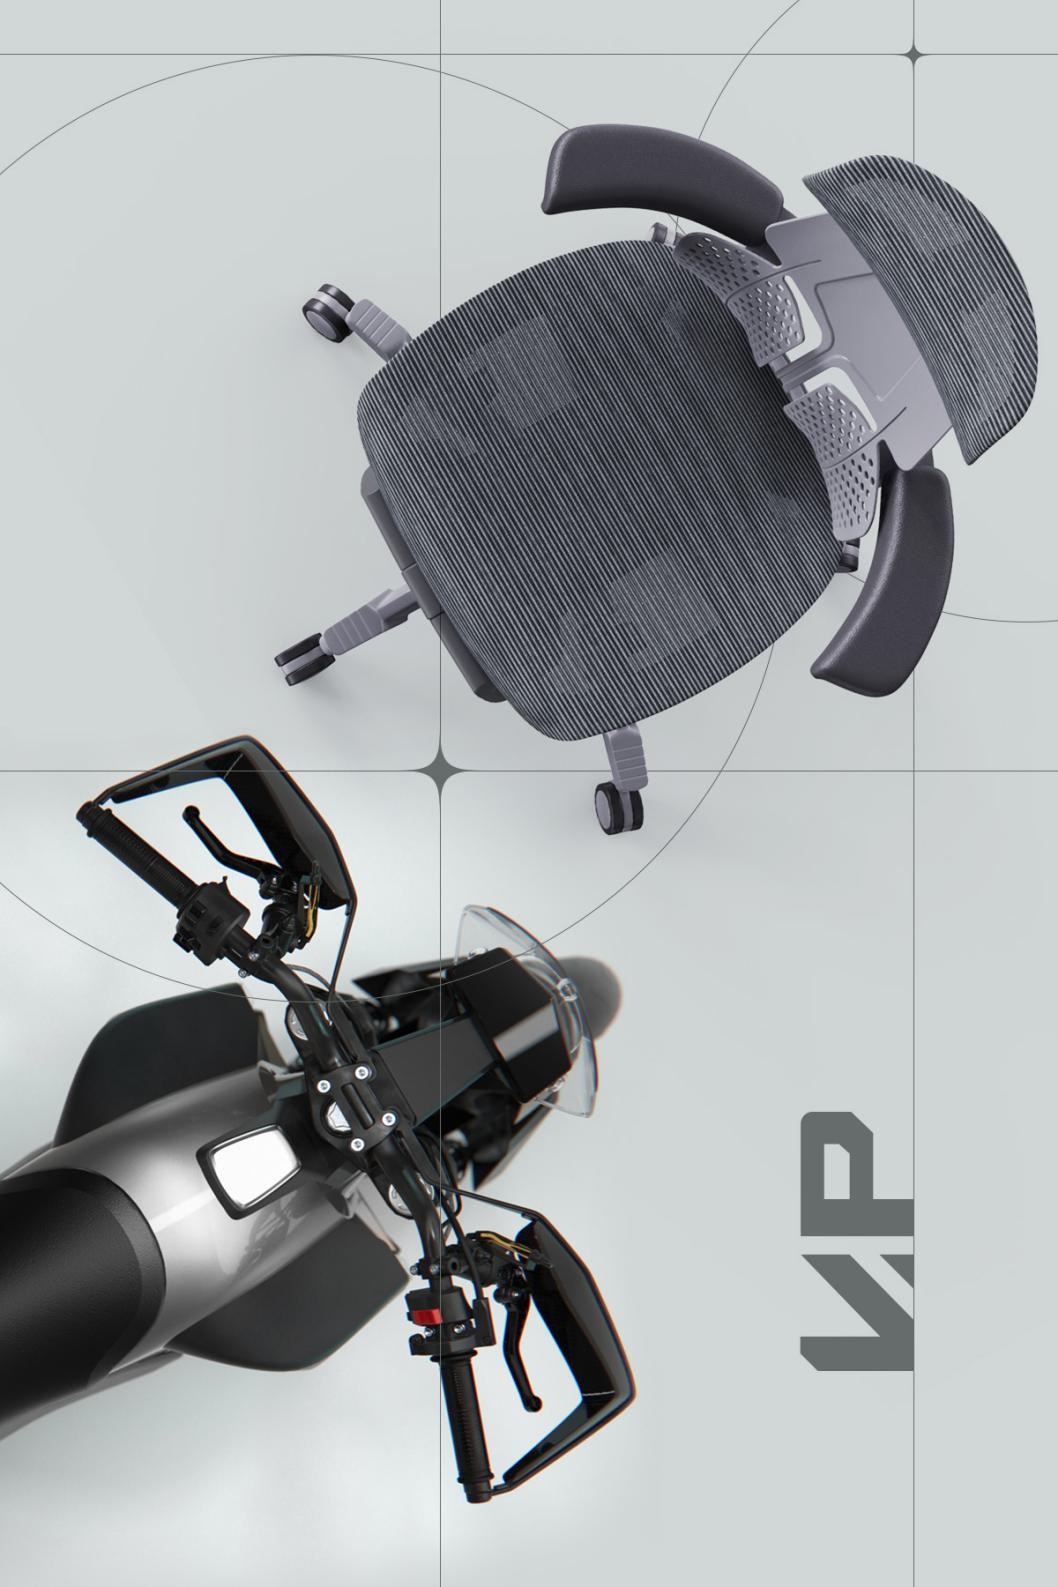 国内首张脊柱拉伸健康椅 摩伽VERTE PRO脊柱椅2.0首发上市